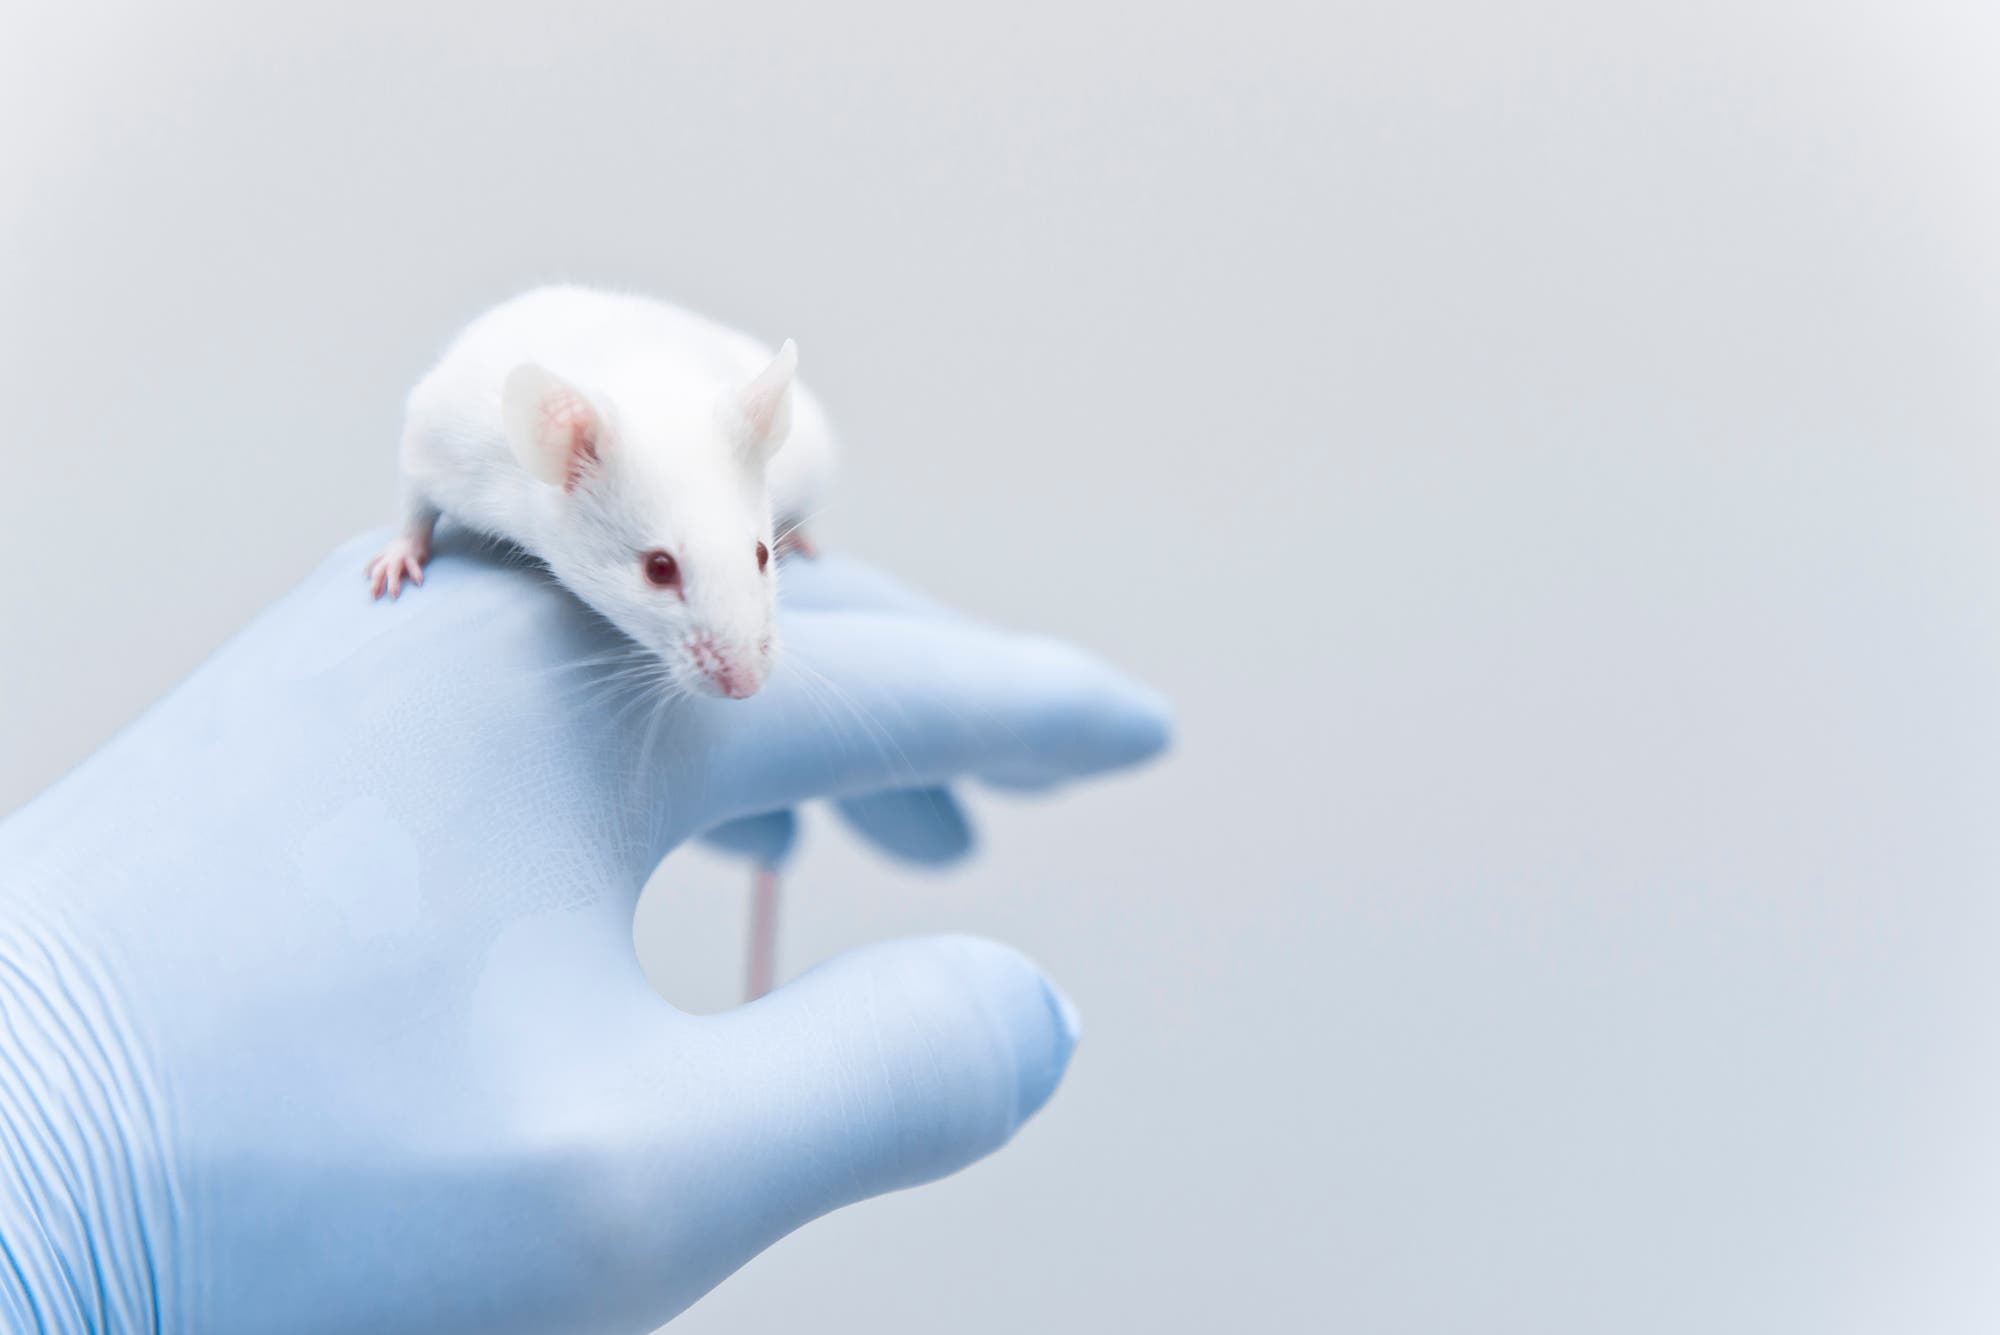 Das Genom der Maus ist ein extrem wichtiges Forschungsmodell